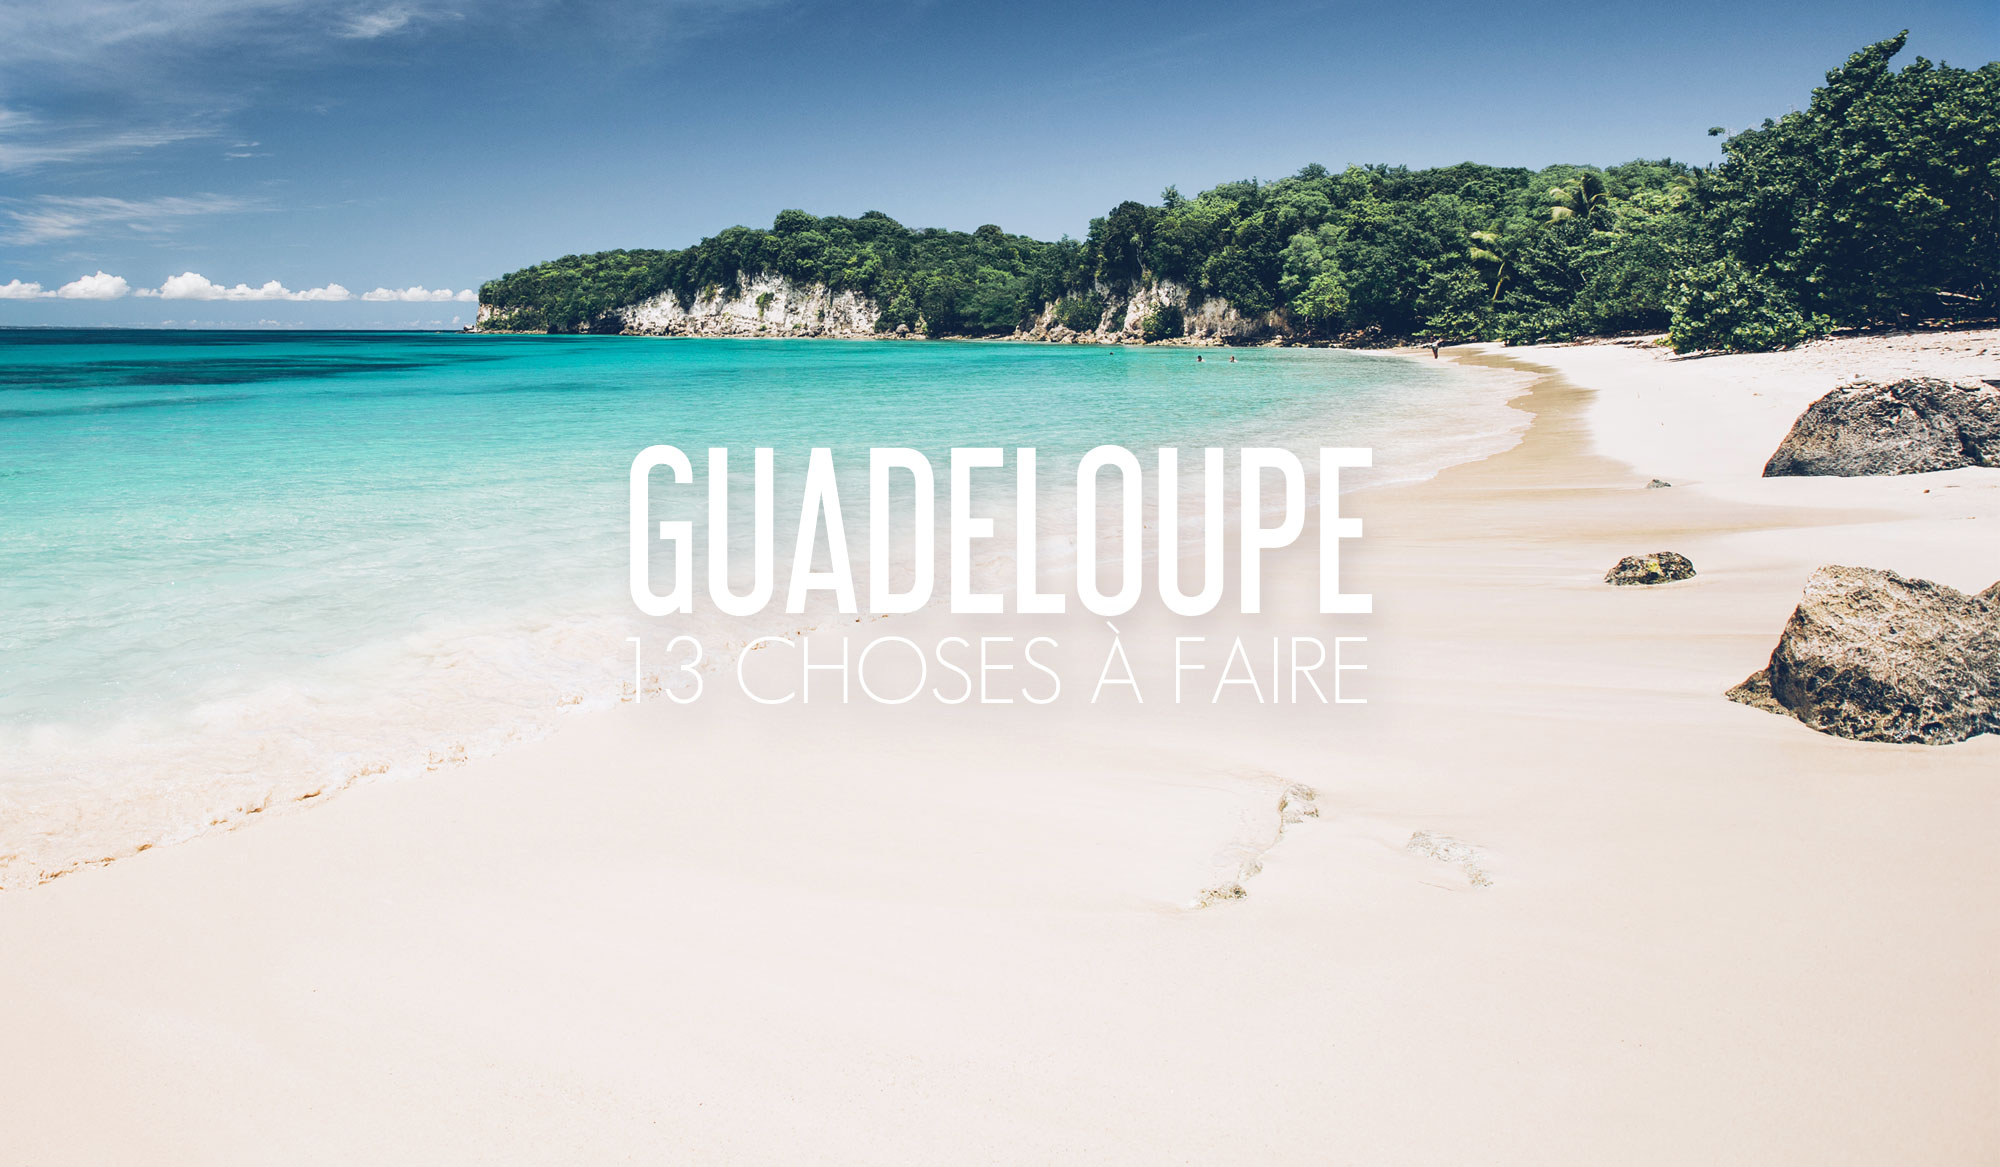 Quelle Heure Est T Il En Guadeloupe 13 Choses à faire et voir en Guadeloupe